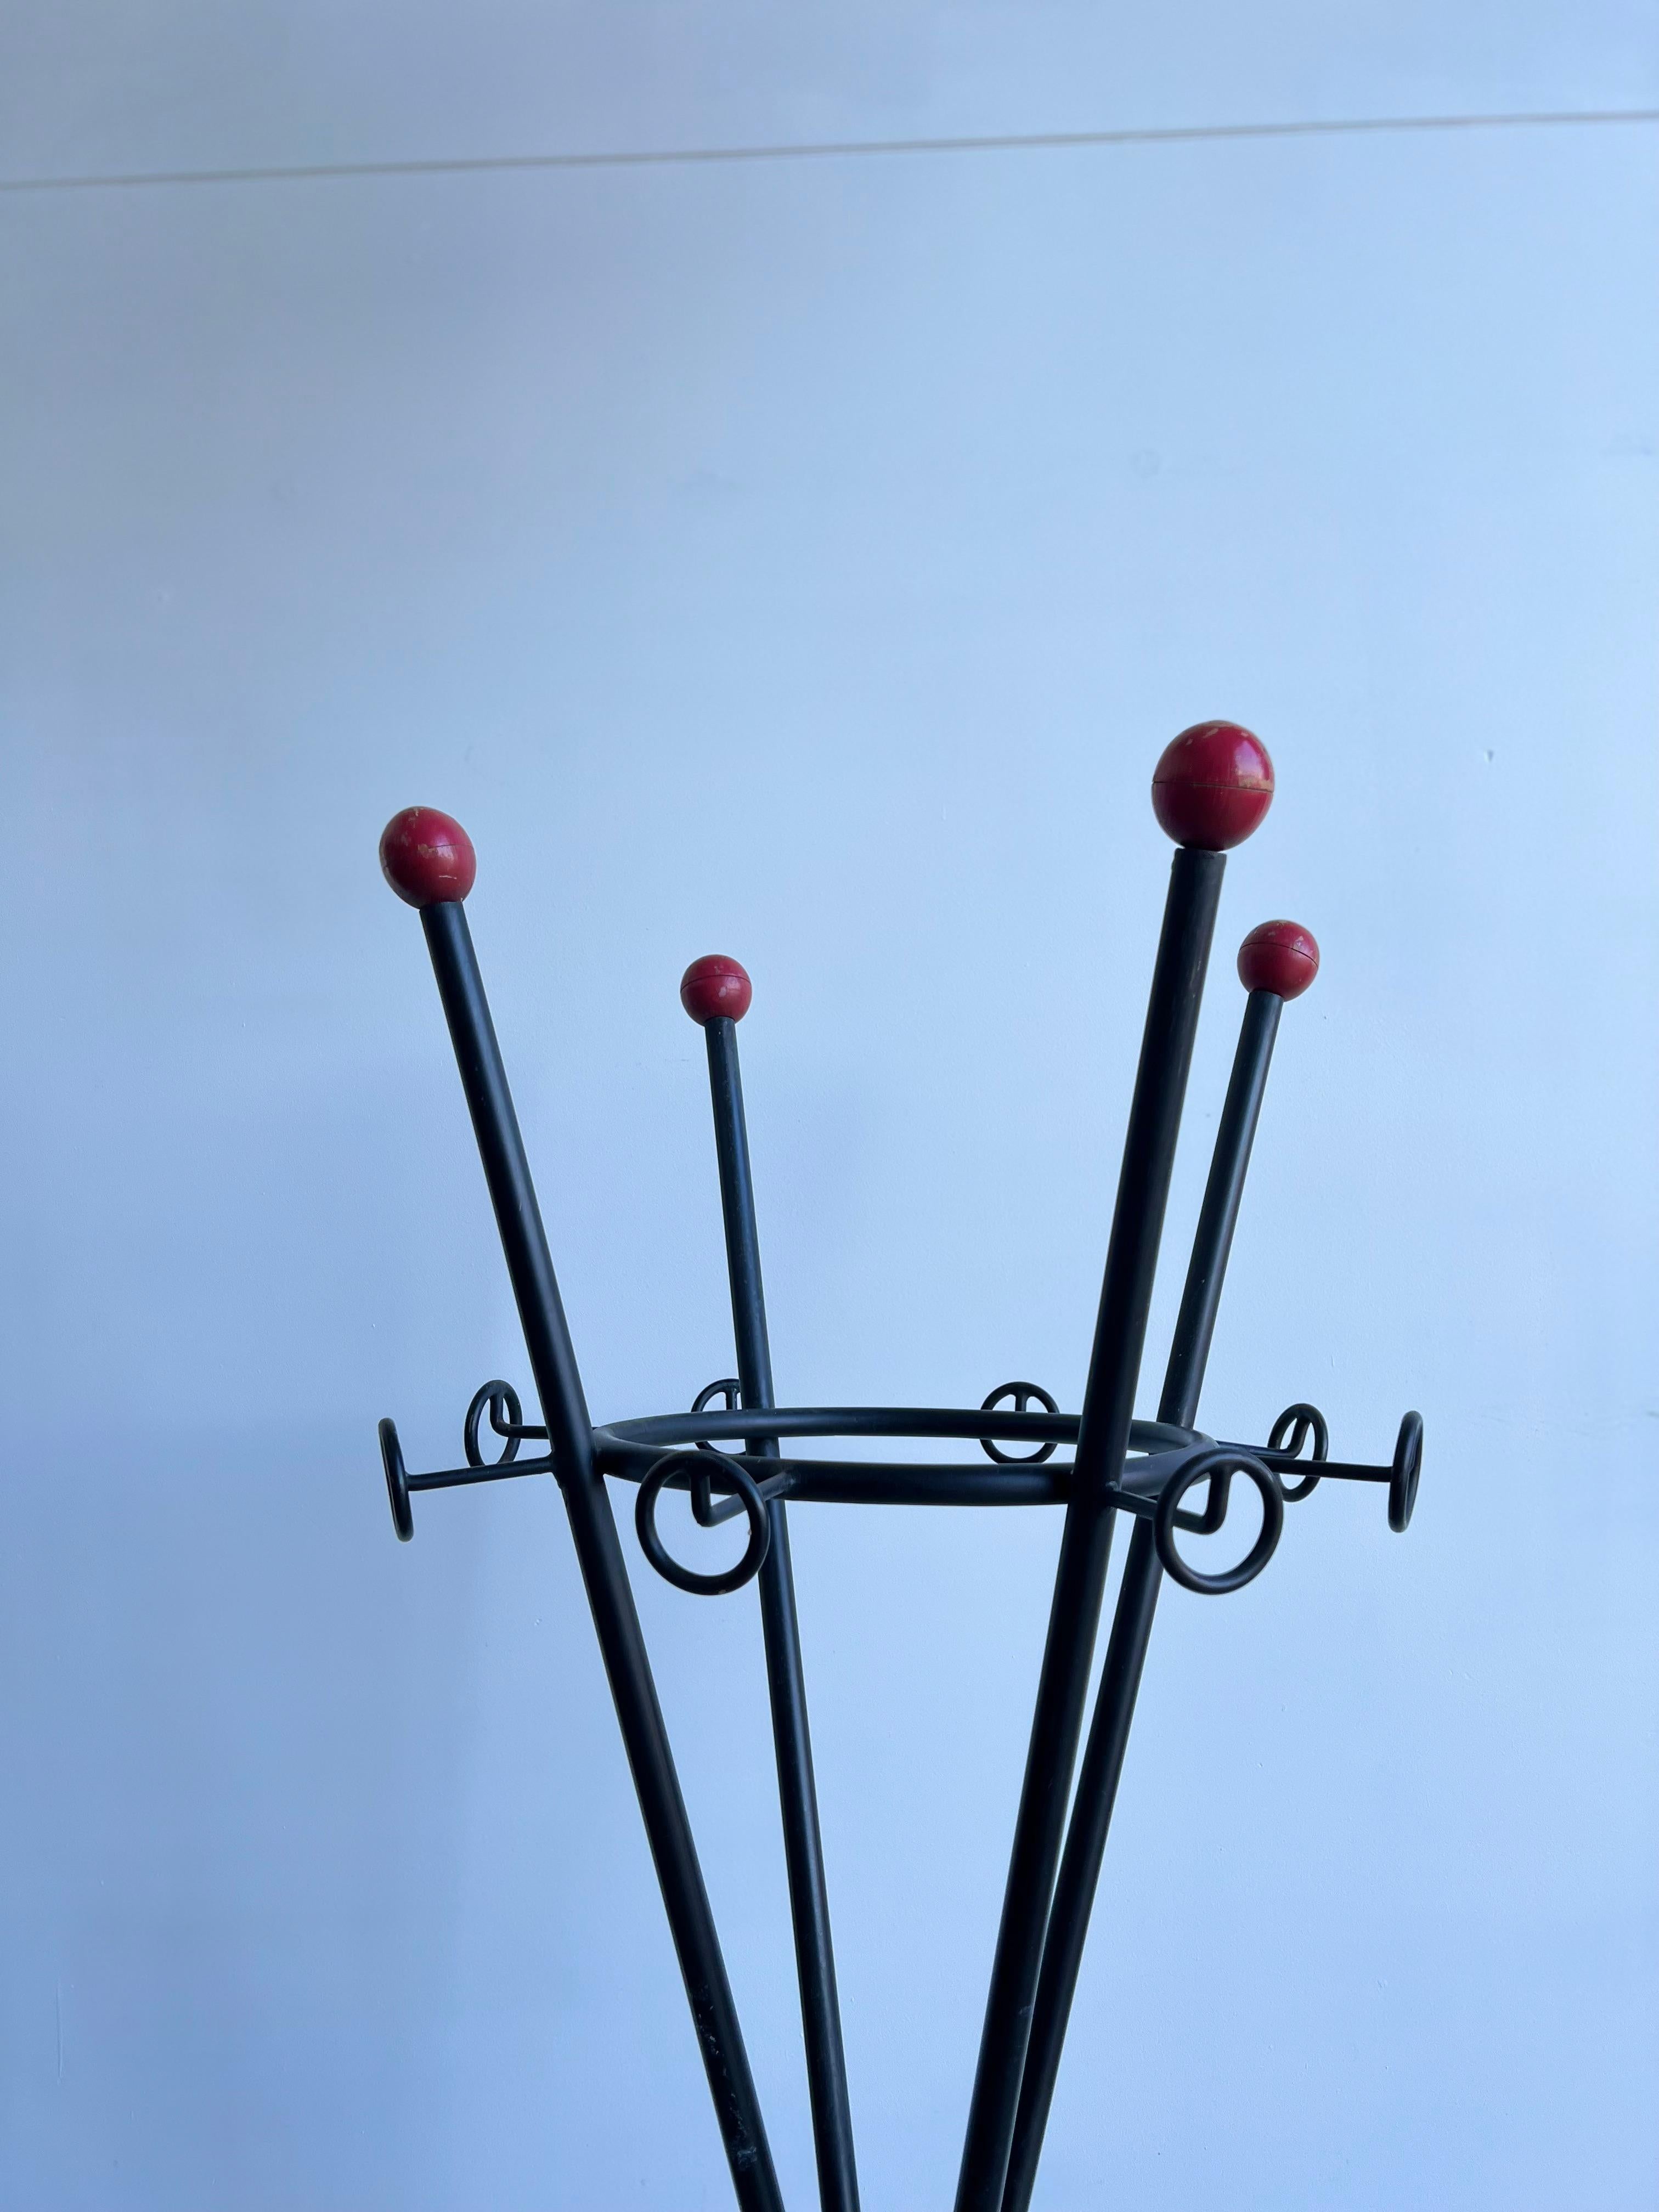 Italienischer Garderobenständer aus den 1980er Jahren aus schwarzem Metall und Holz mit roten Kugeln.
Garderobenständer 1980er Jahre auch Schirmhalter in der Mitte des Ständers.
Die Spitze des Wappenschildes ist mit roten Holzkugeln auf dem